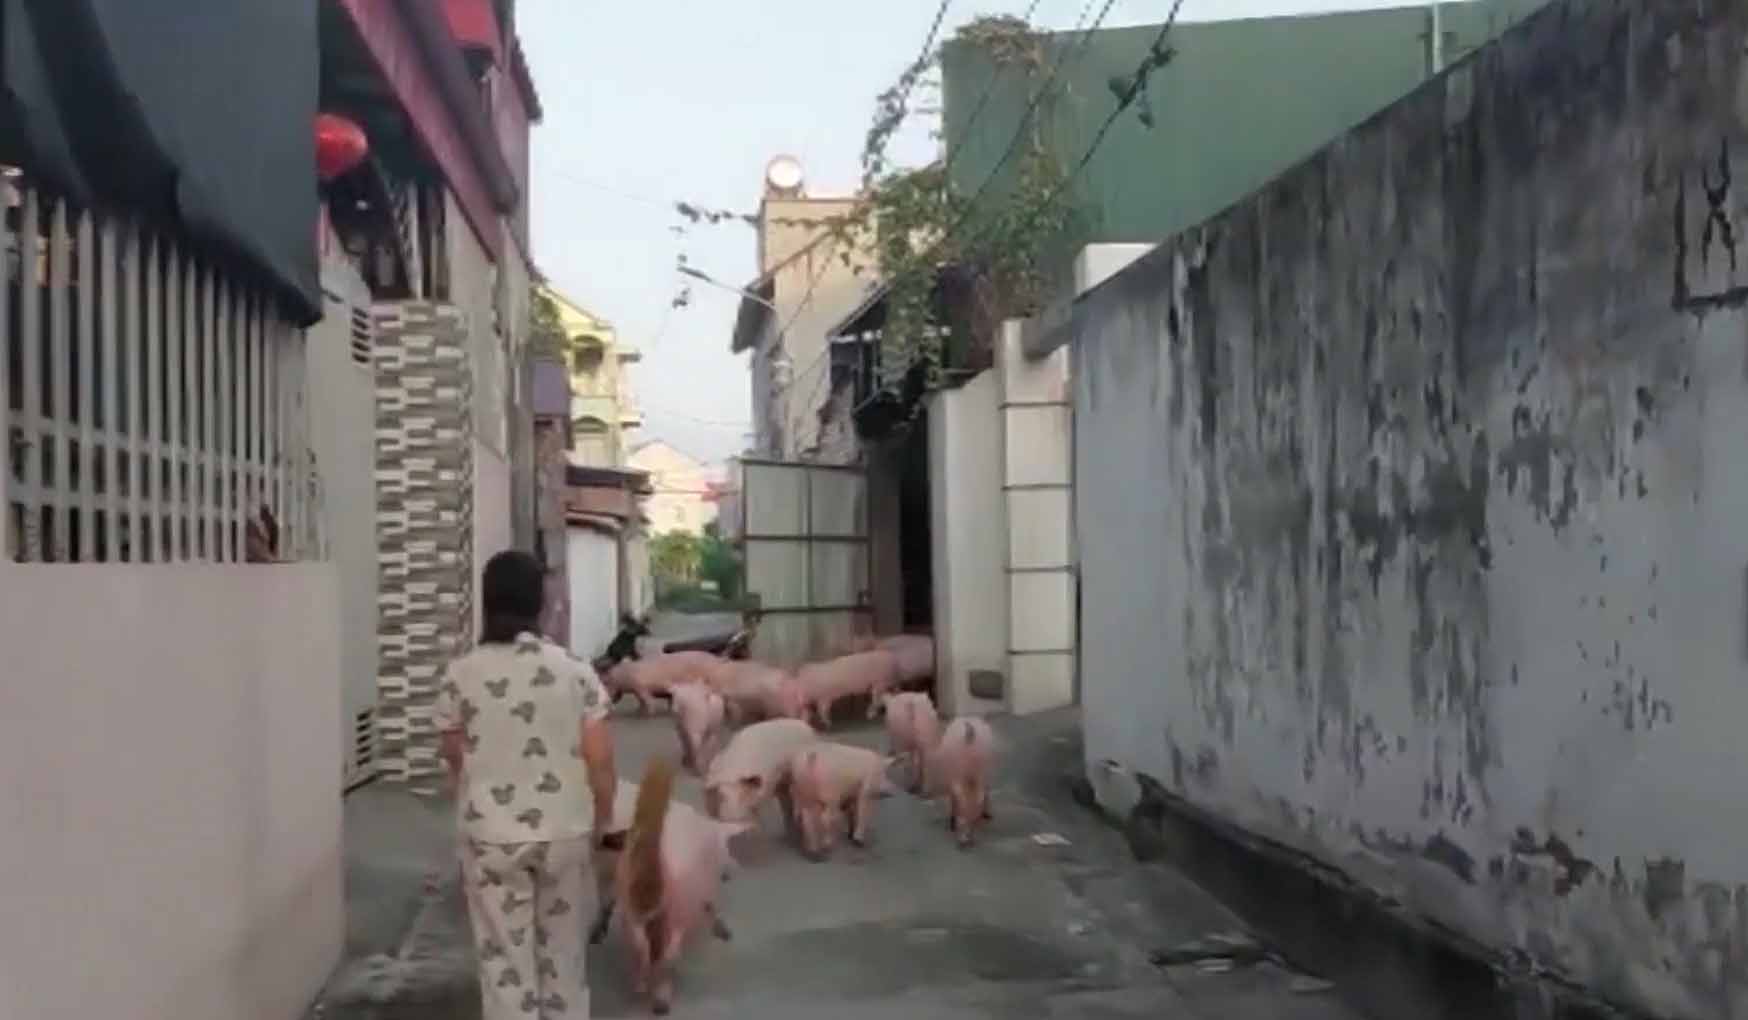 Lợn từ lò mổ trái phép được chăn thả trong khu dân cư. Ảnh: Người dân cung cấp